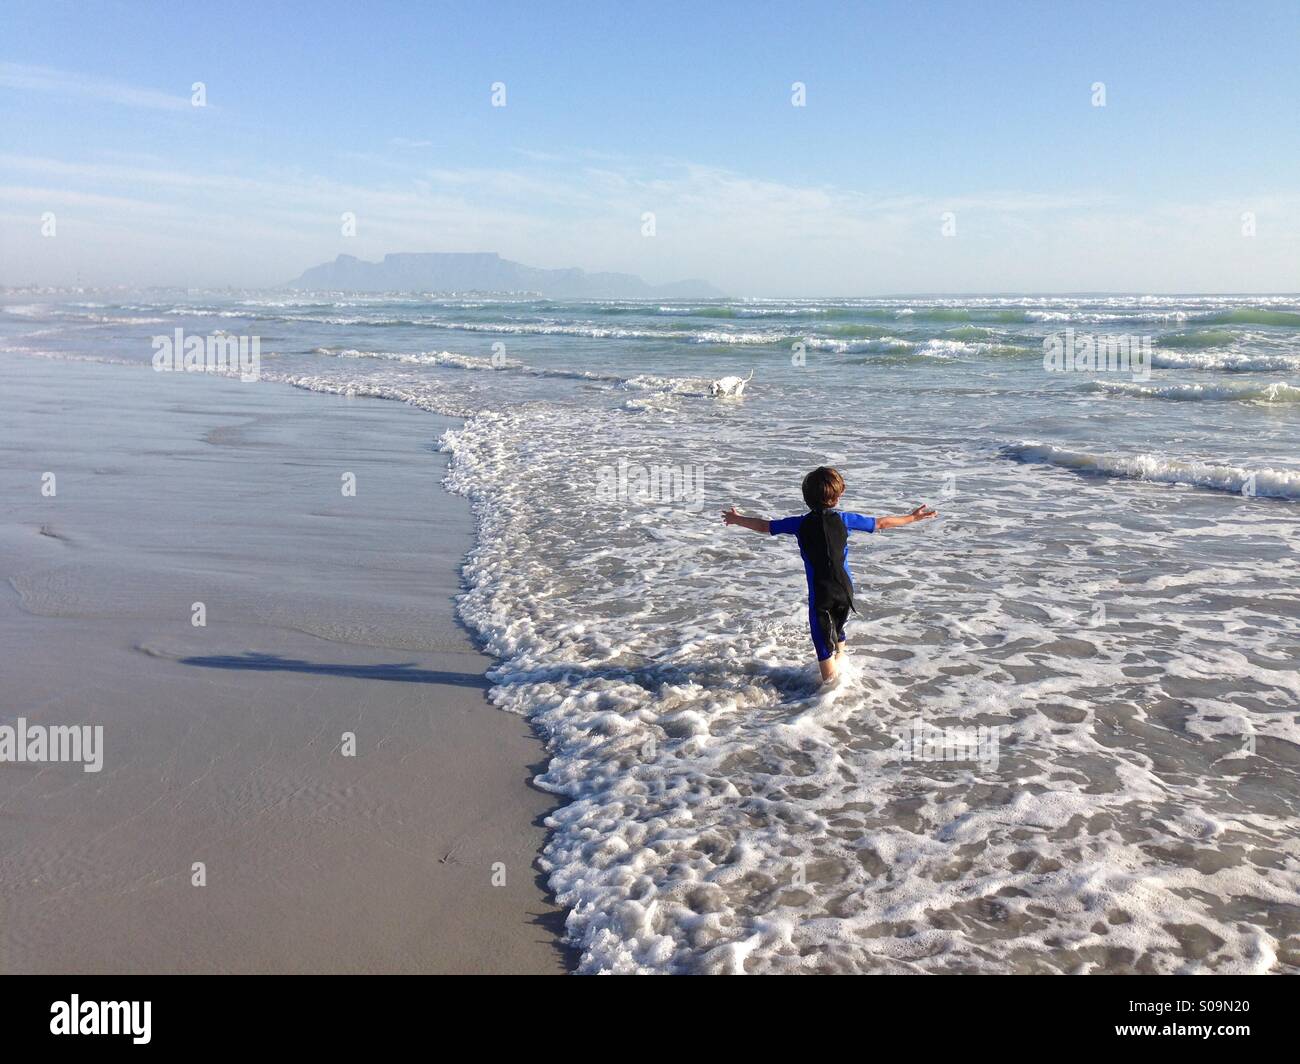 Joven jugando en el mar cerca de Melkbosstrand, Cape Town, Sudáfrica, con la montaña de la Mesa visibles en el fondo. Foto de stock